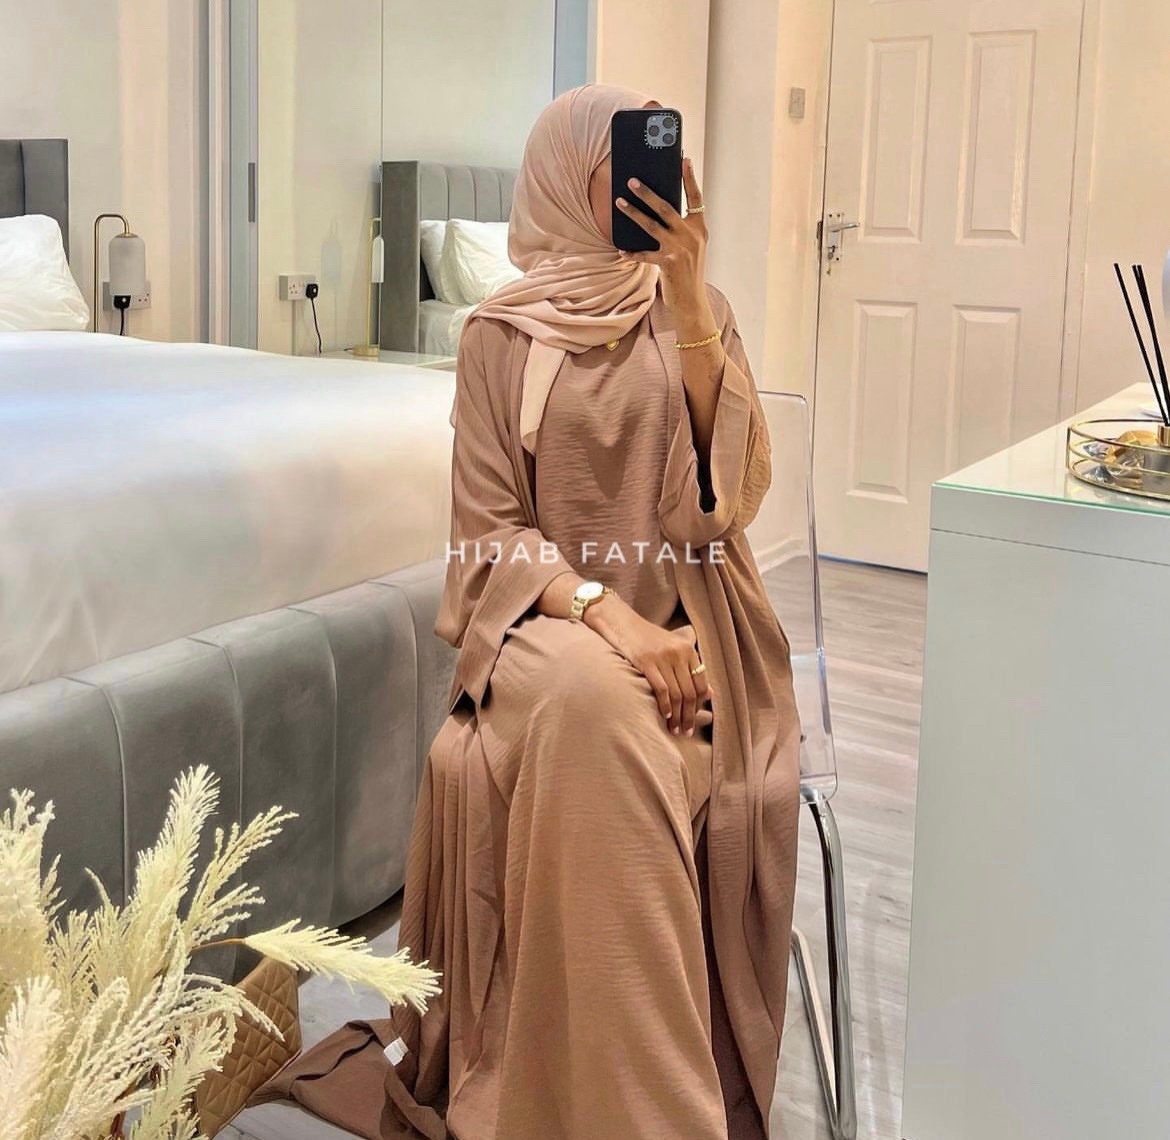 Hijab Pin – Arabic attire